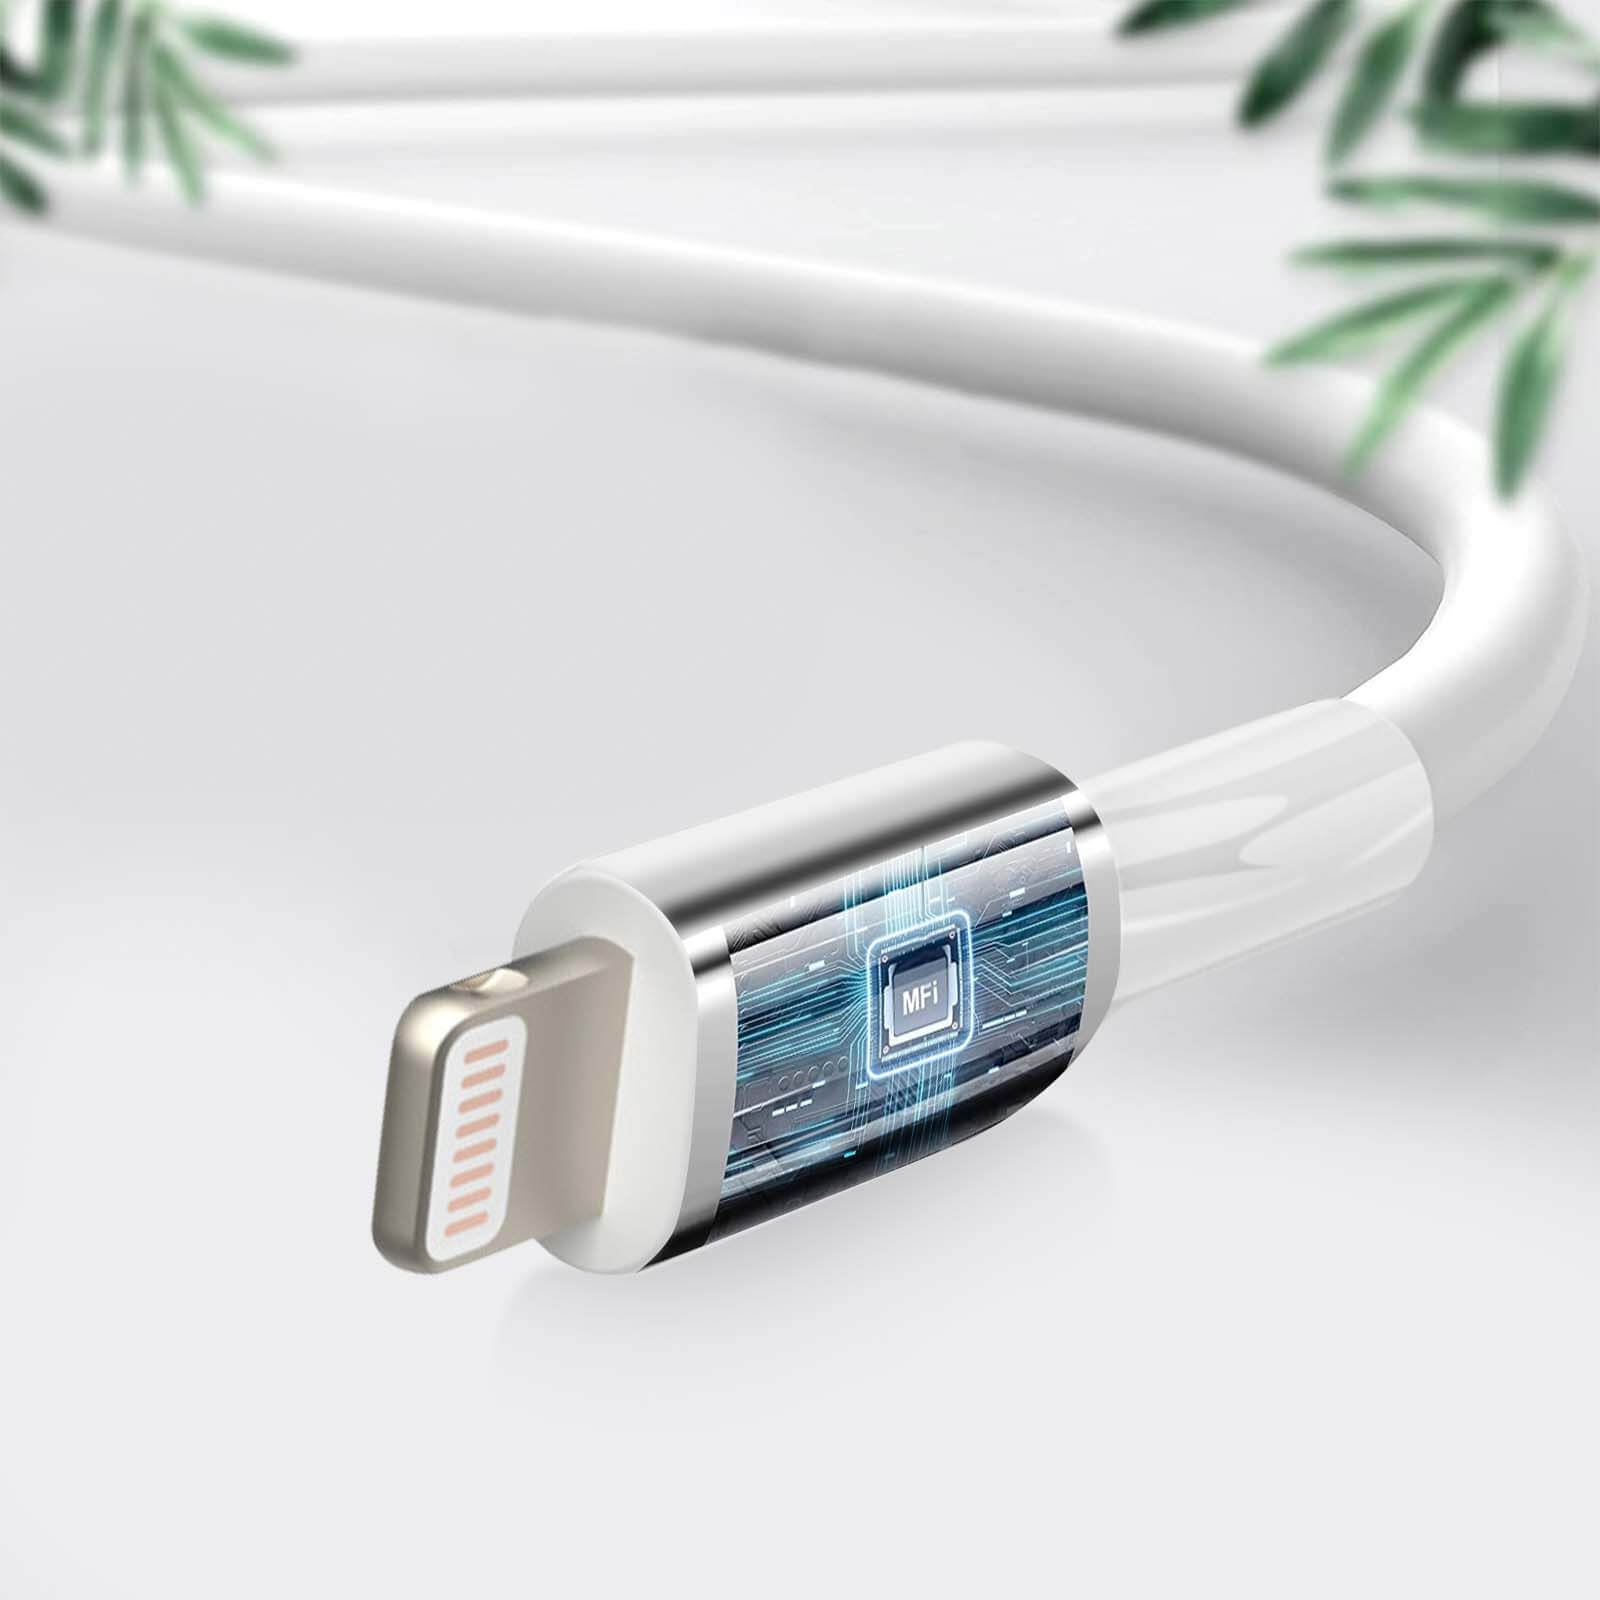 BELKIN USB USB-Kabel / MFi 1m Kabel Lightning